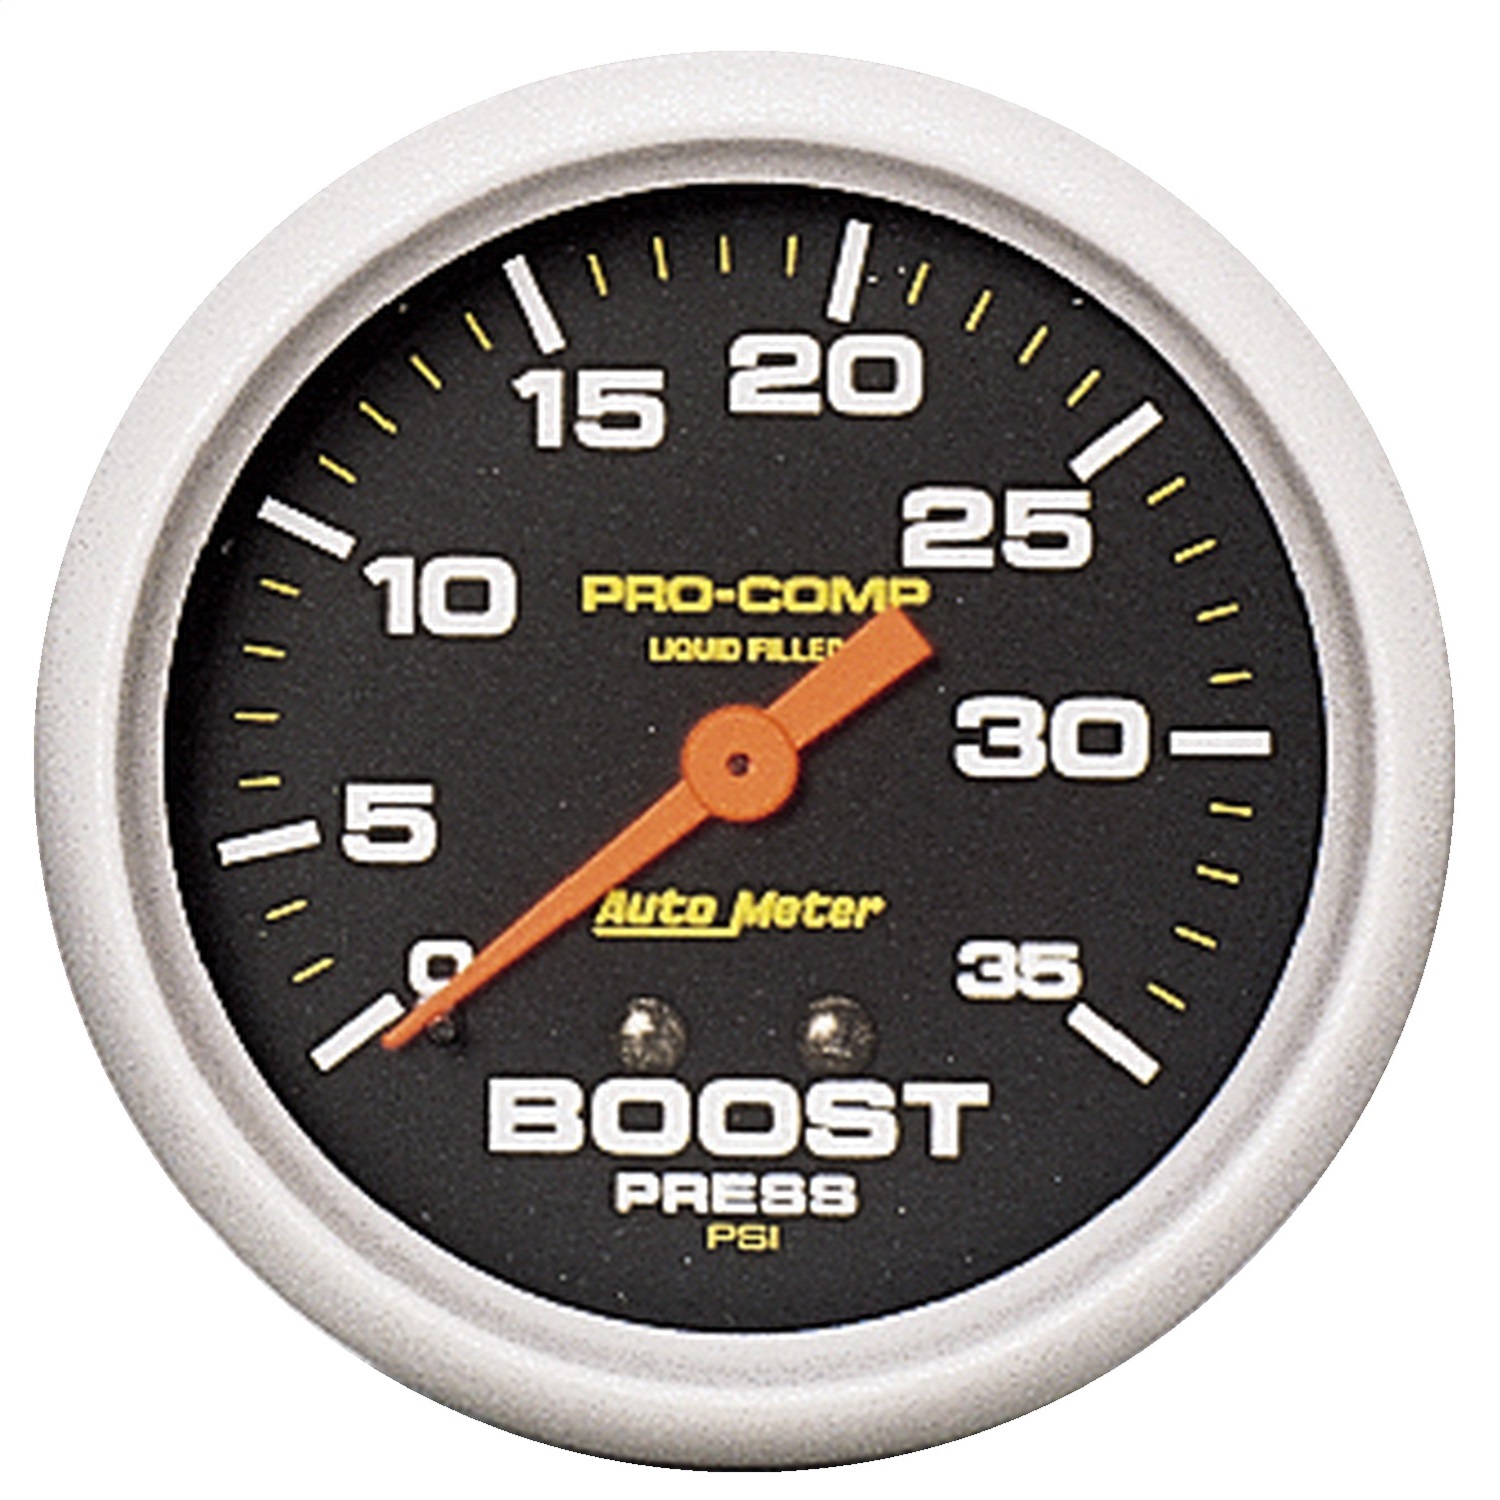 Auto Meter Auto Meter 5404 Pro-Comp; Liquid-Filled Mechanical Boost Gauge